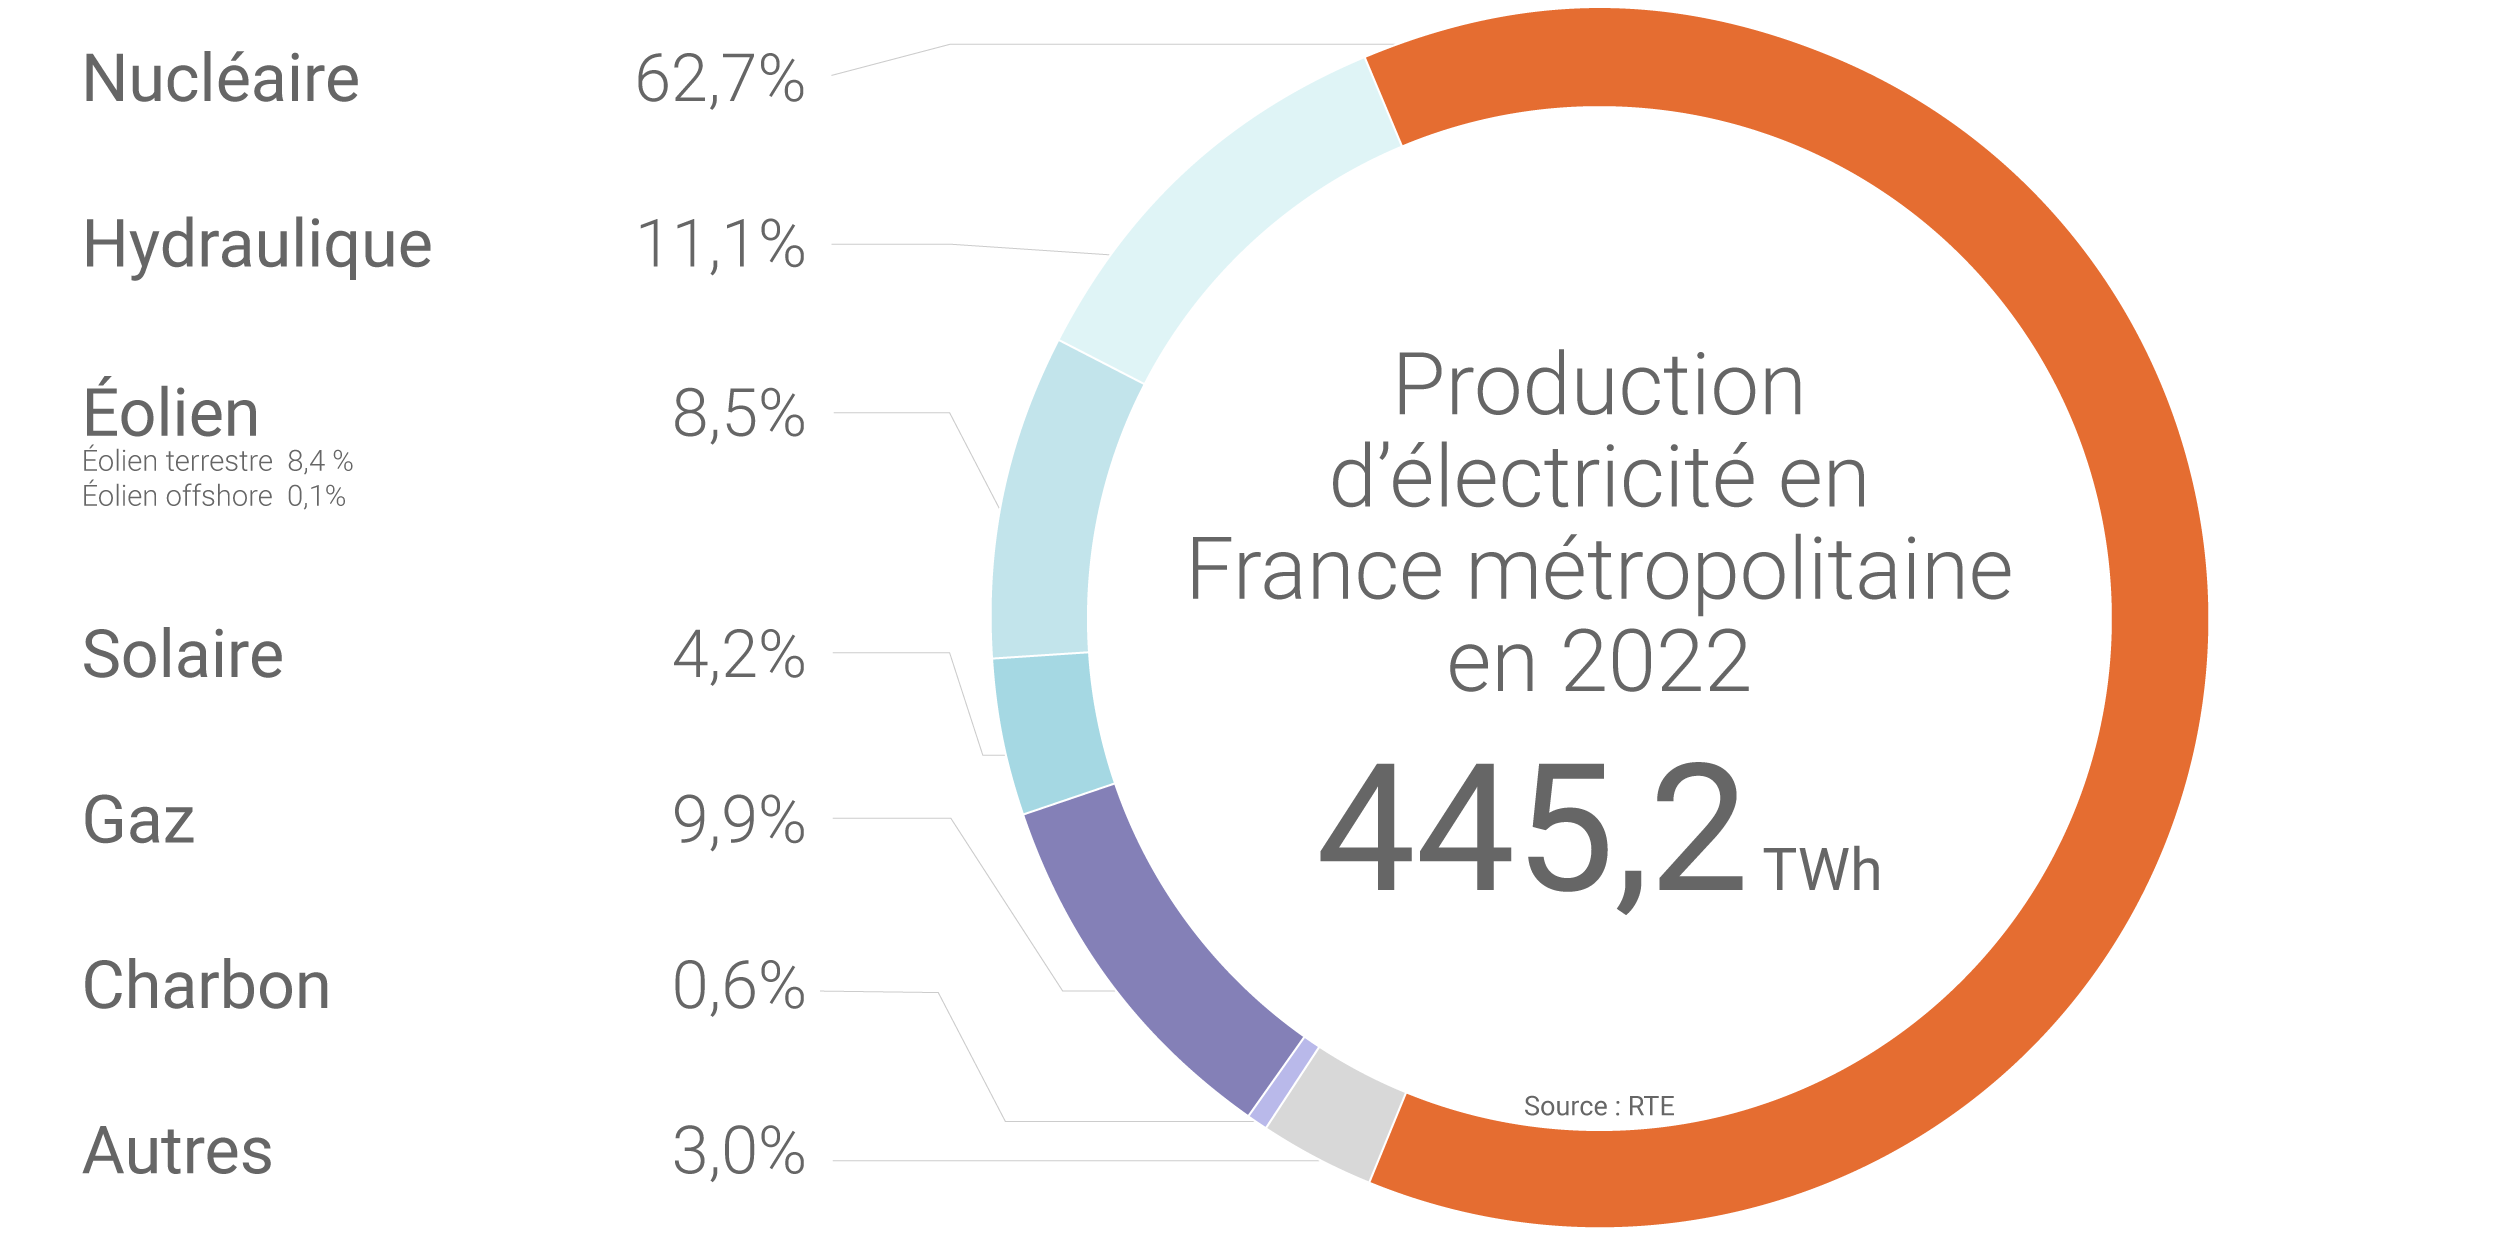 Bilan électrique France 2023 : un record avant le recul ?